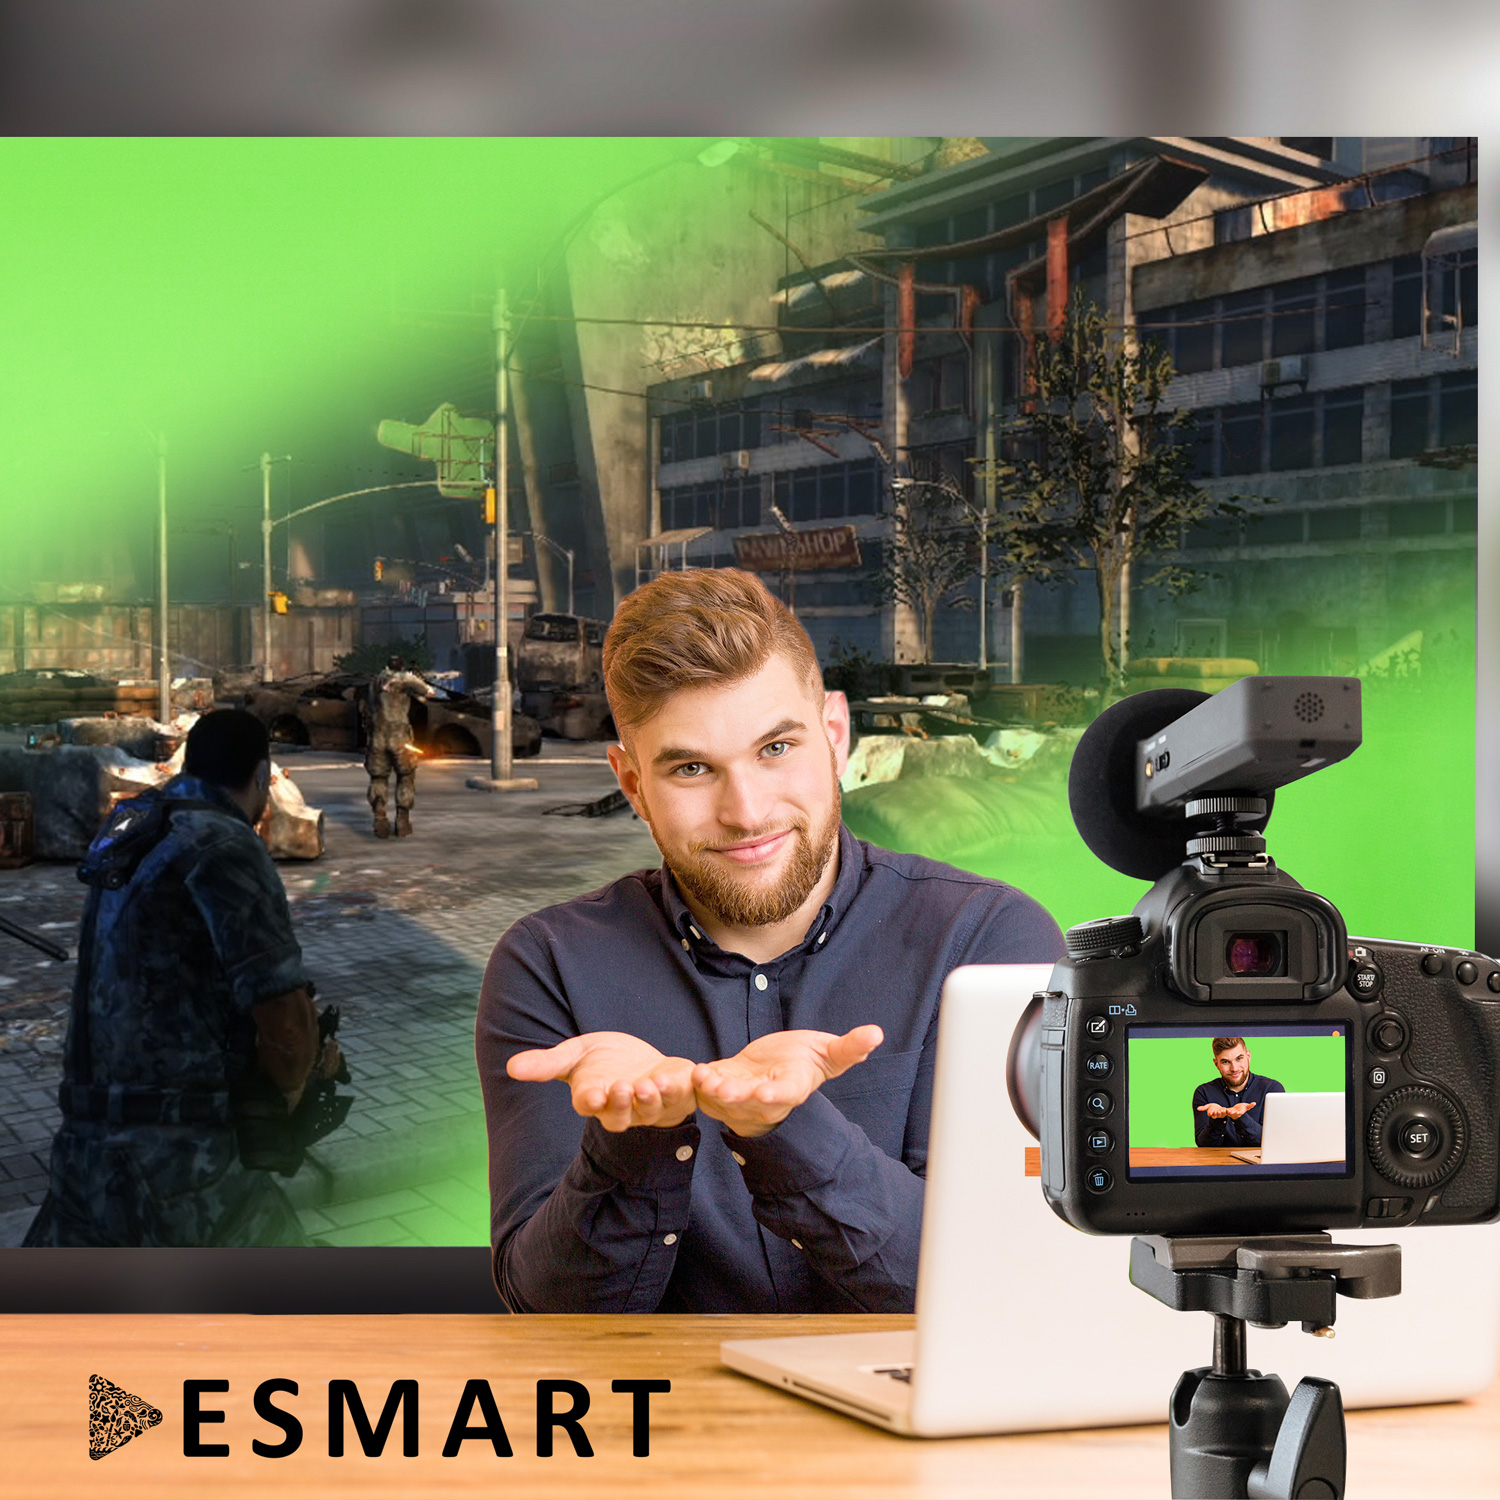 ESMART Expert 112 200 Green-Screen Ultralightweight 90\